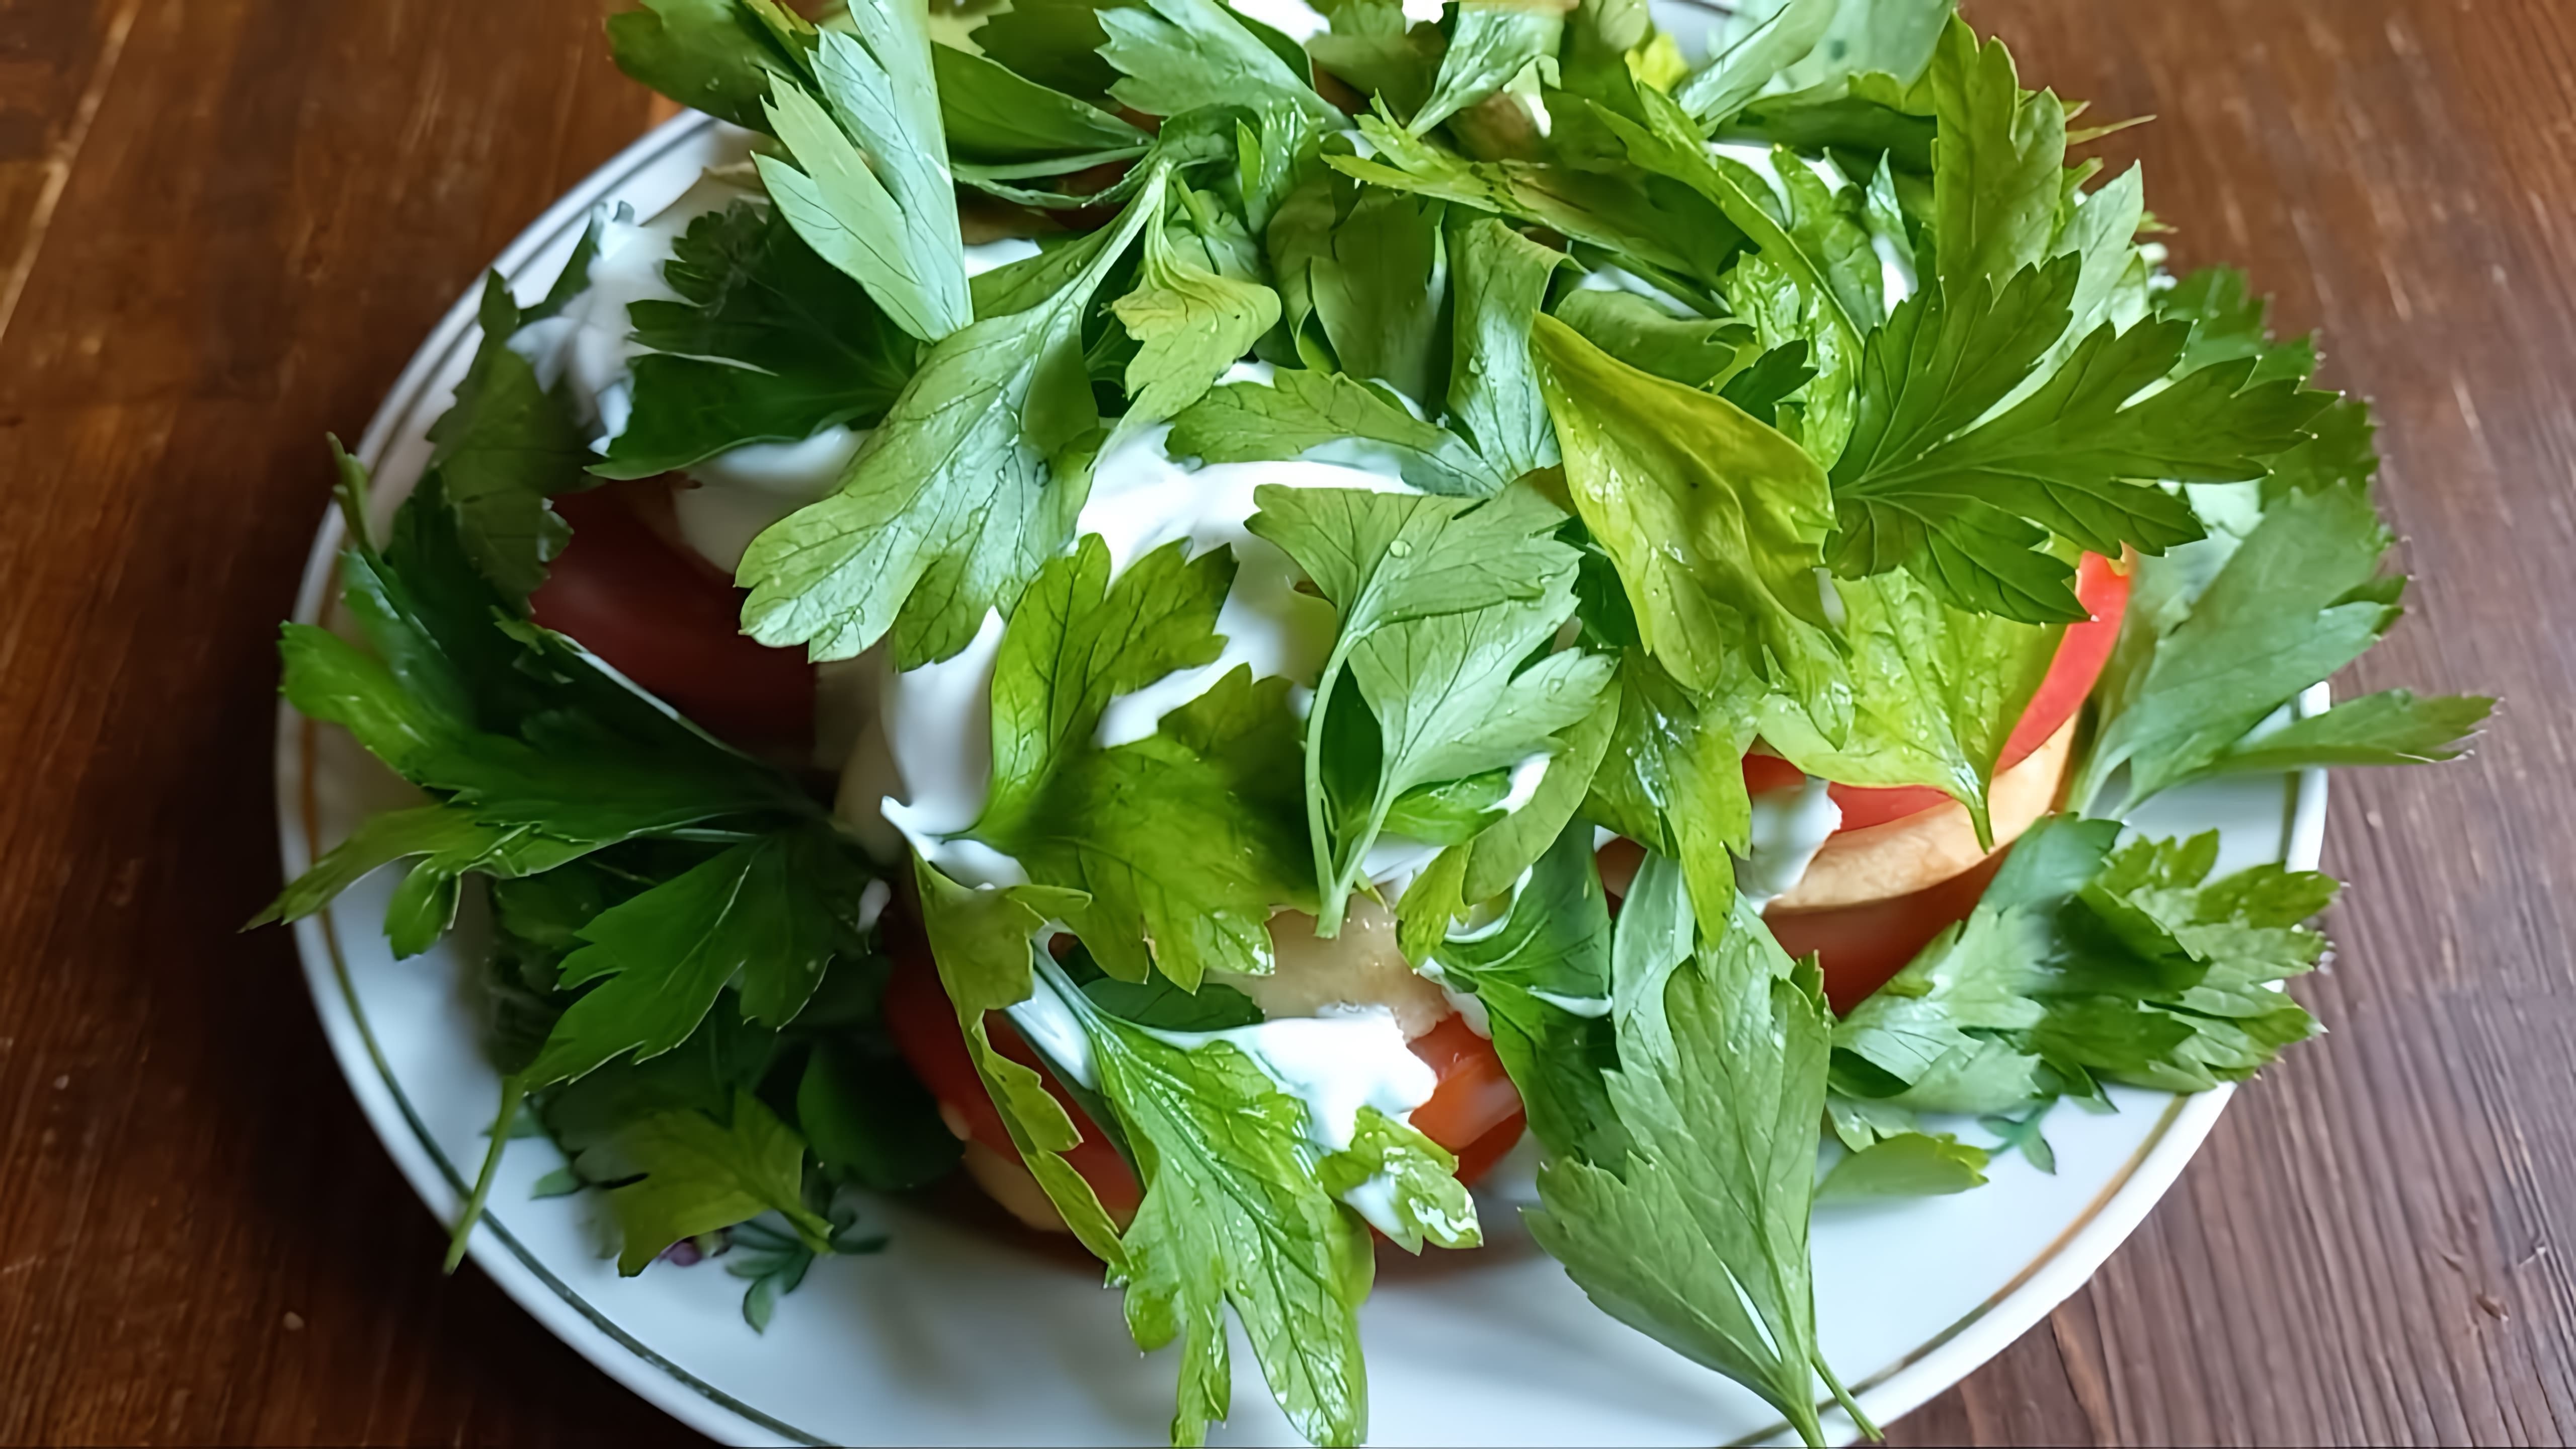 Салат из помидоров и яблок со сметаной - это вкусное и простое блюдо, которое можно приготовить в домашних условиях